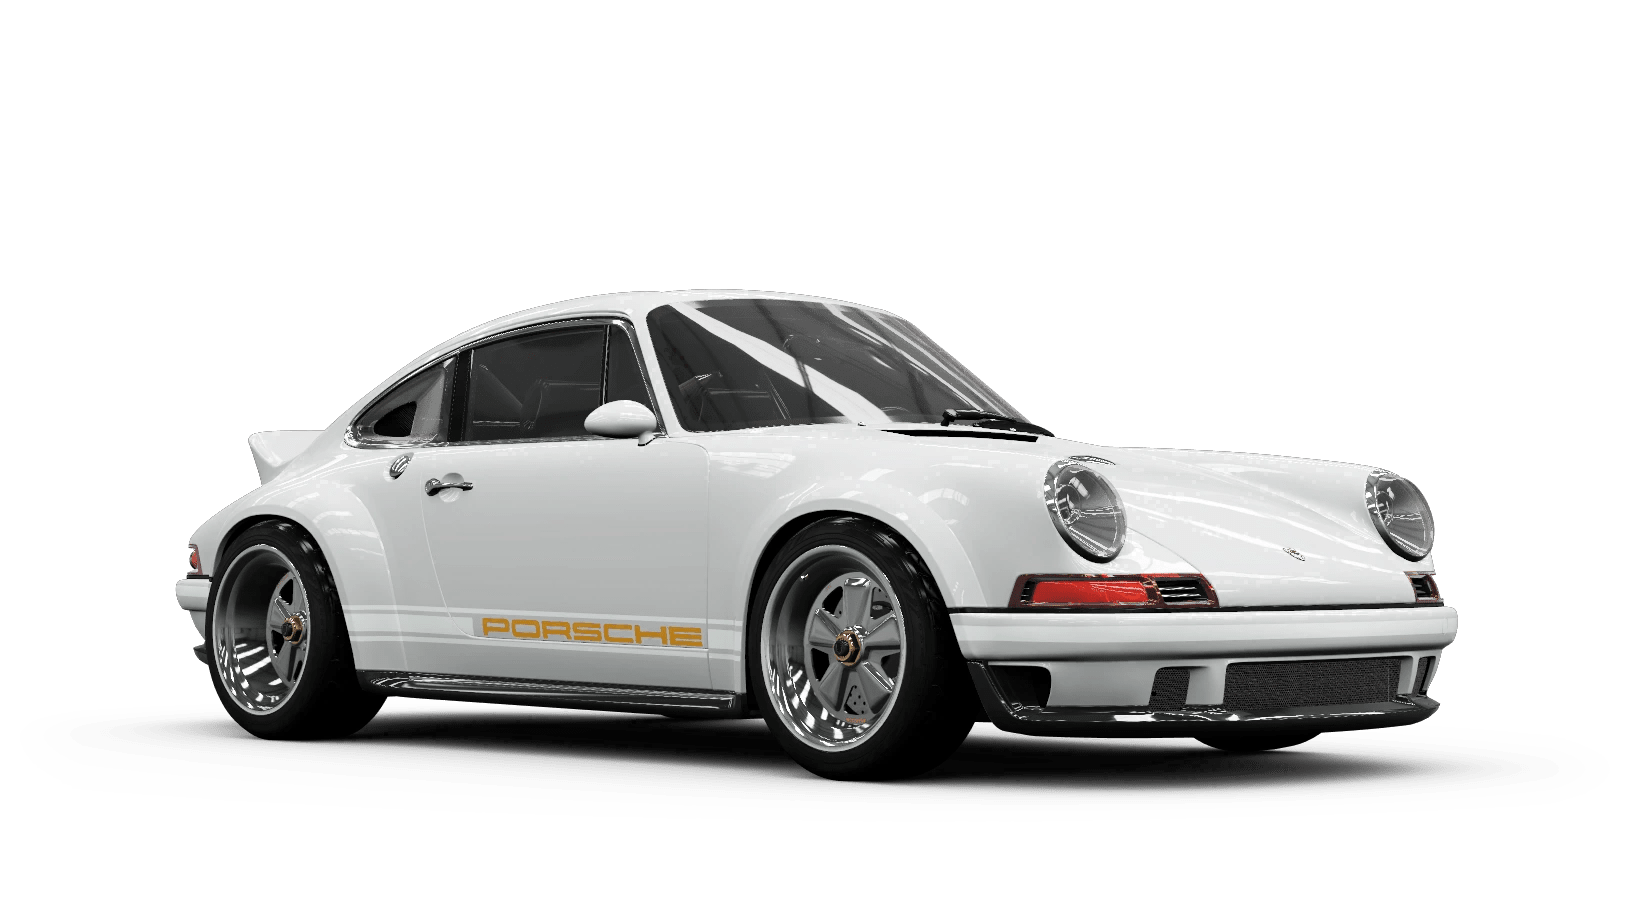 TKRB RACING | Votre spécialiste Porsche en Ile-de-France